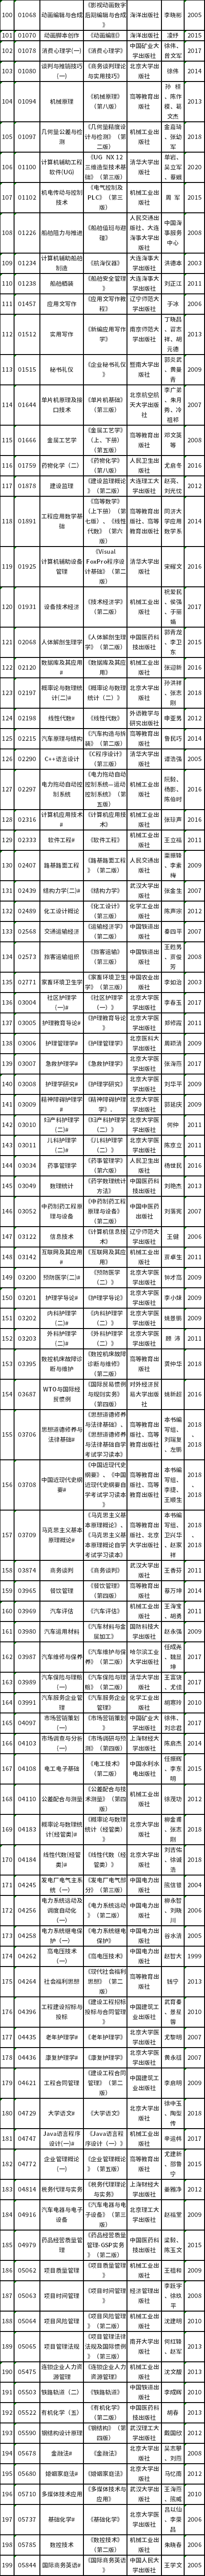 辽宁省2022年4月自考理论课考试教材信息表